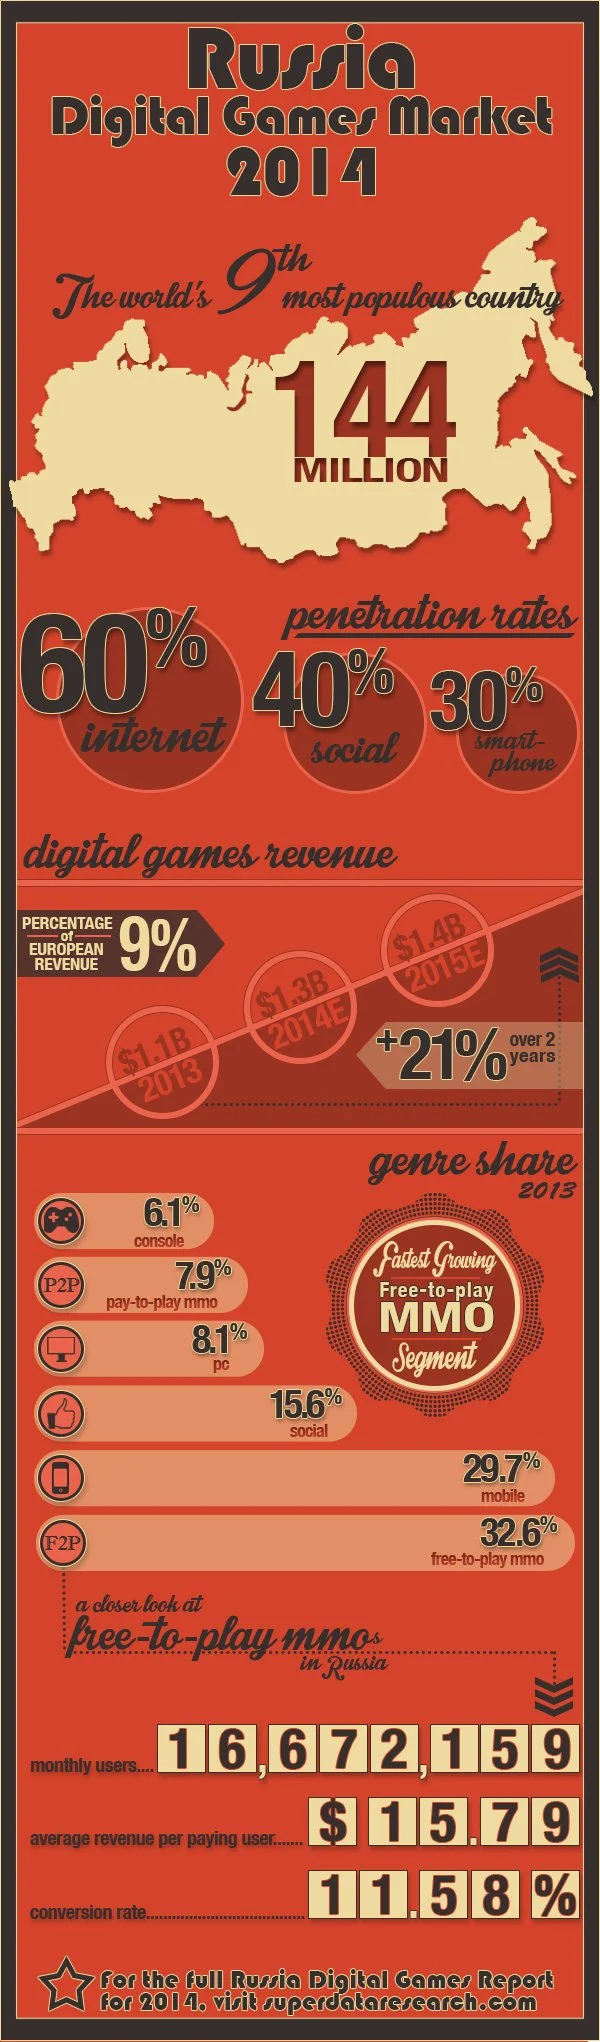 Российский рынок цифровых игр оценили в $1,1 млрд - фото 1